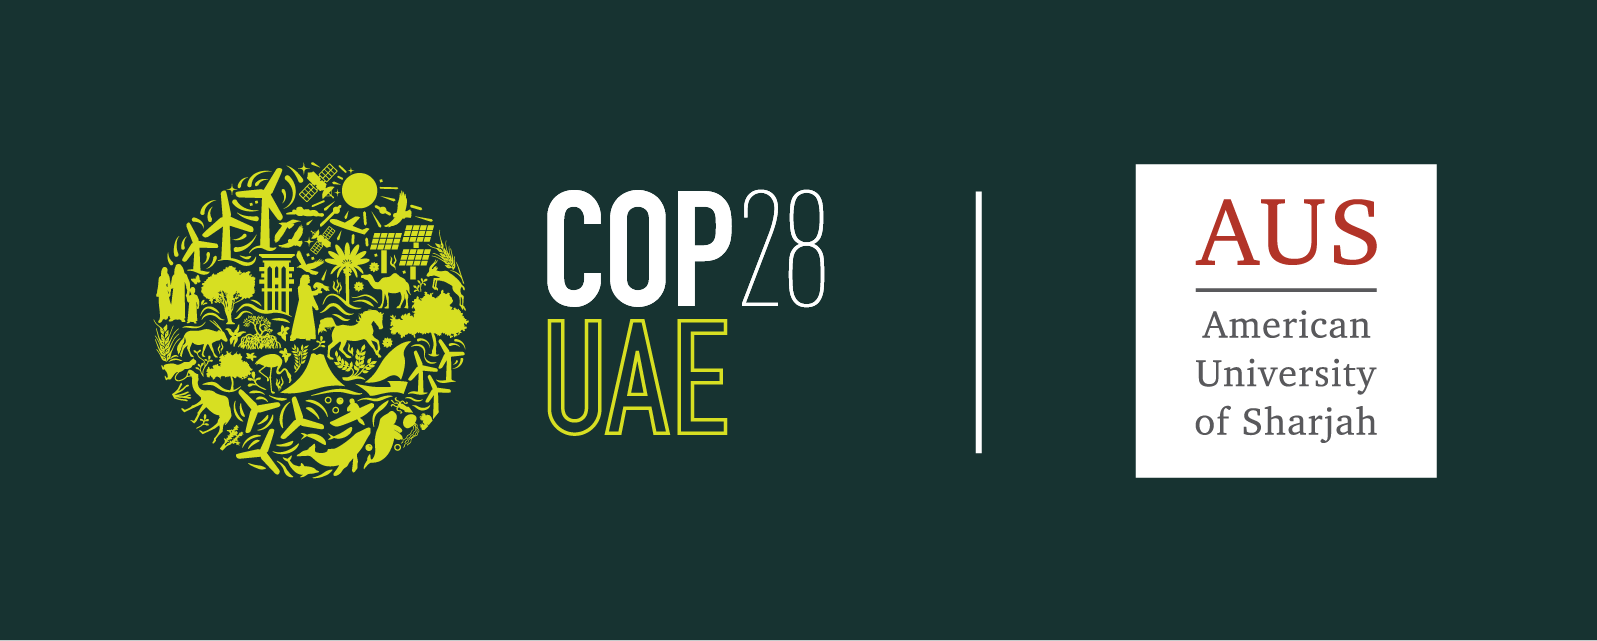 COP28_UAE-04